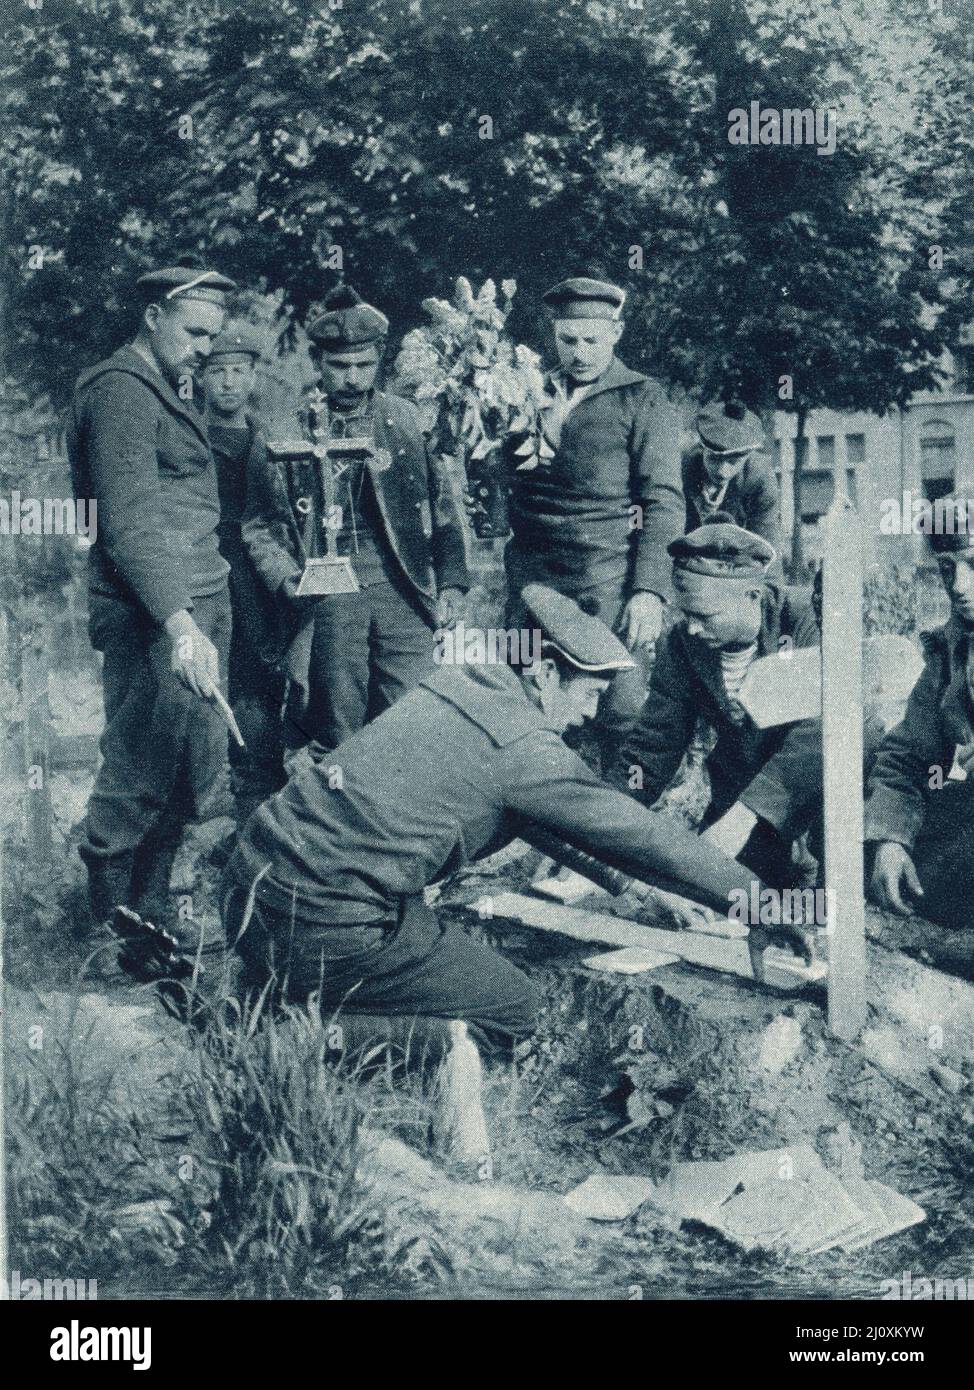 Uomini della Brigata Navale Francese posano piastrelle e una croce su una tomba di compagni; Nieuport, Belgio, 1915. Fotografia in bianco e nero Foto Stock